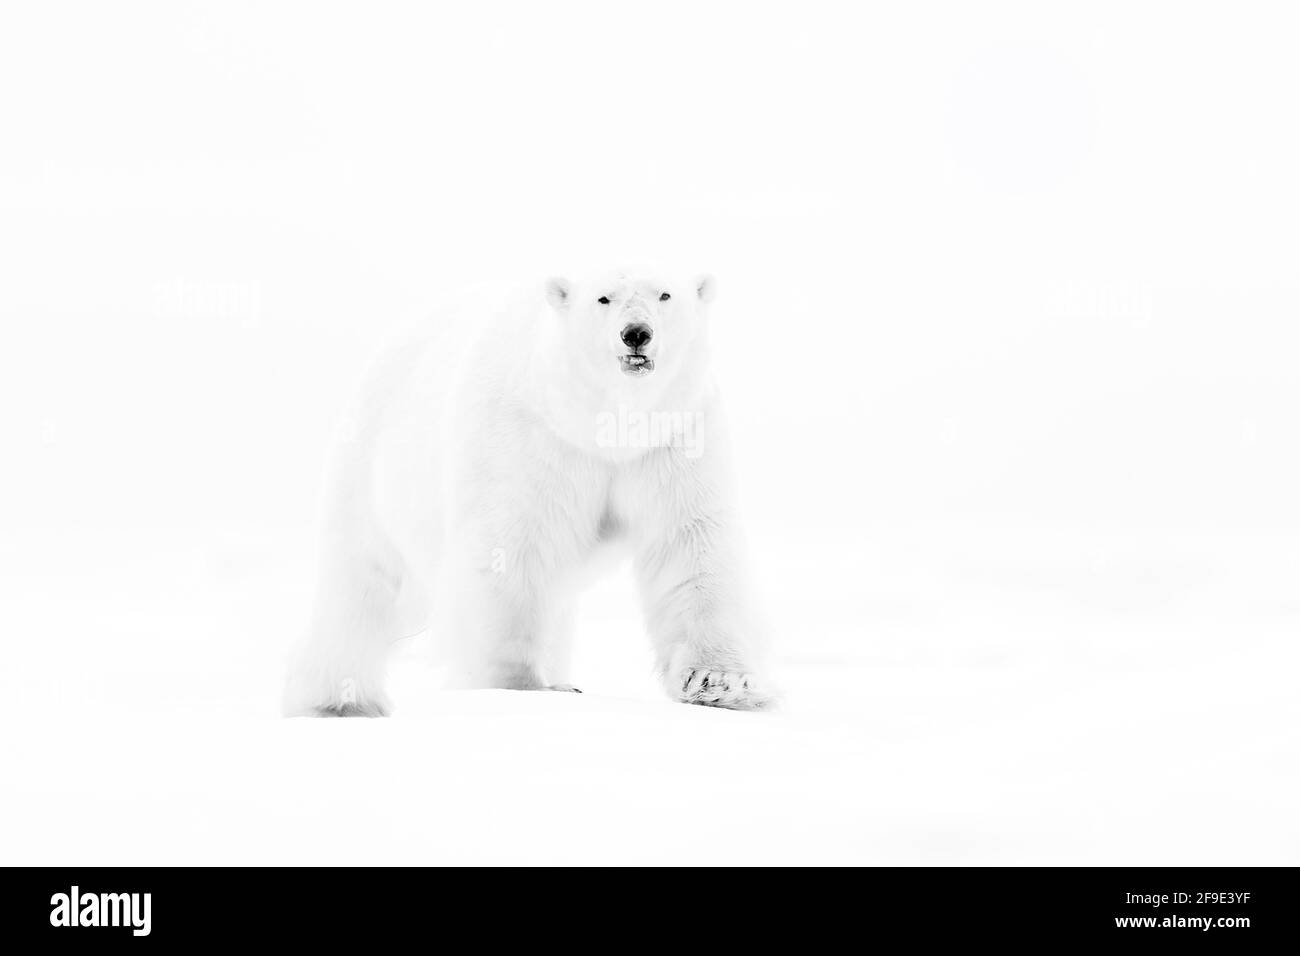 Eisbär am Drift-Eisrand mit Schnee und Wasser im russischen Meer. Weißes  Tier in der Natur Lebensraum, Europa. Wildlife-Szene aus der Natur.  Gefährliche Ba Stockfotografie - Alamy